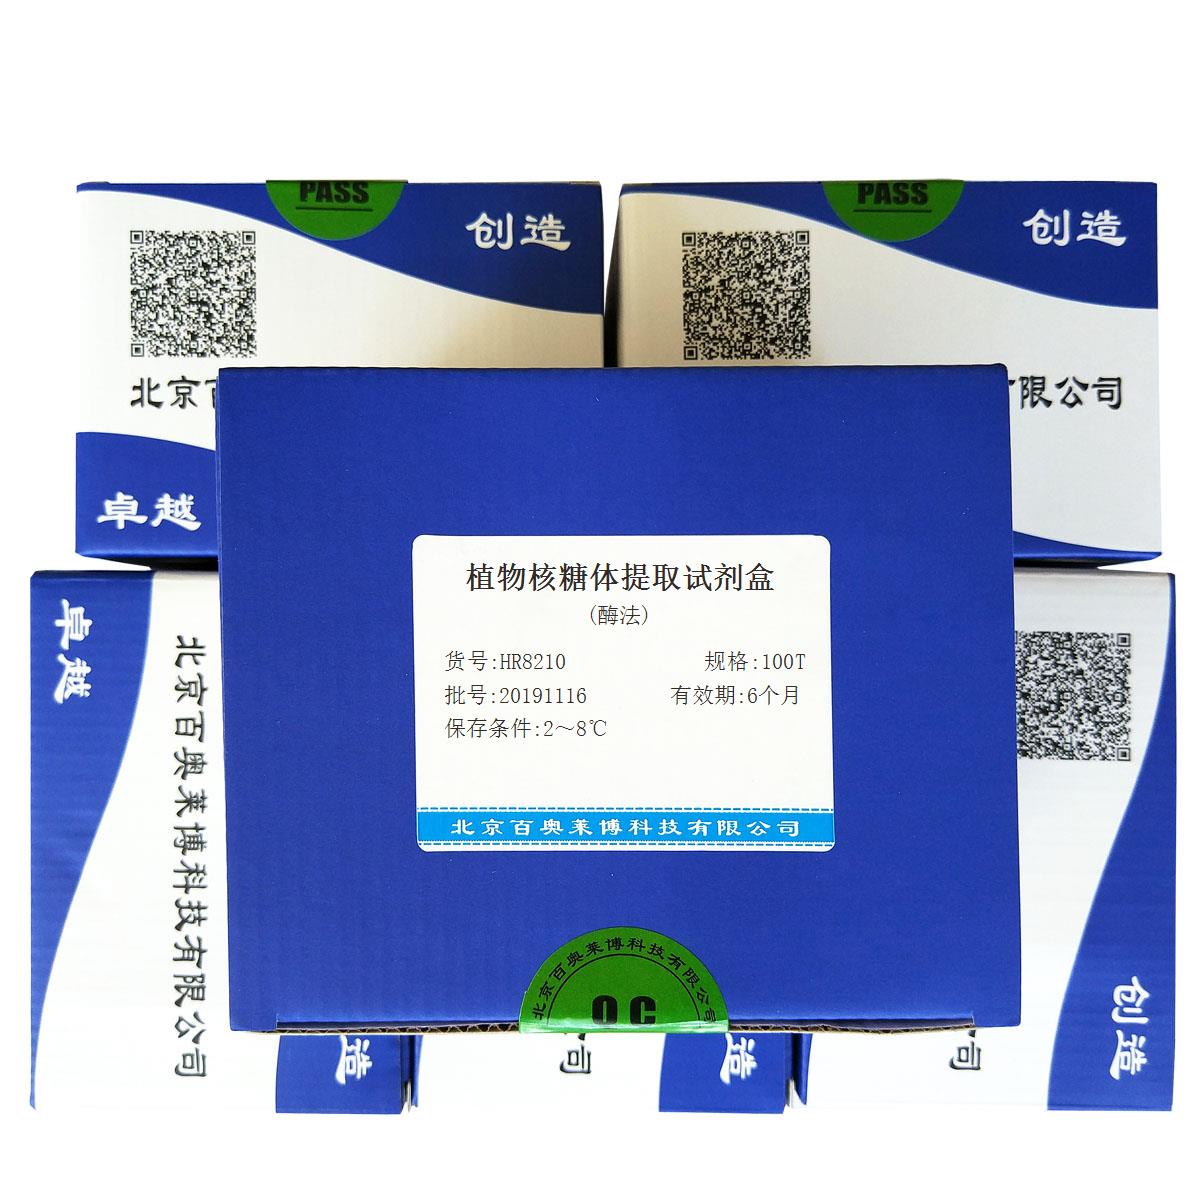 植物核糖体提取试剂盒(酶法)北京价格